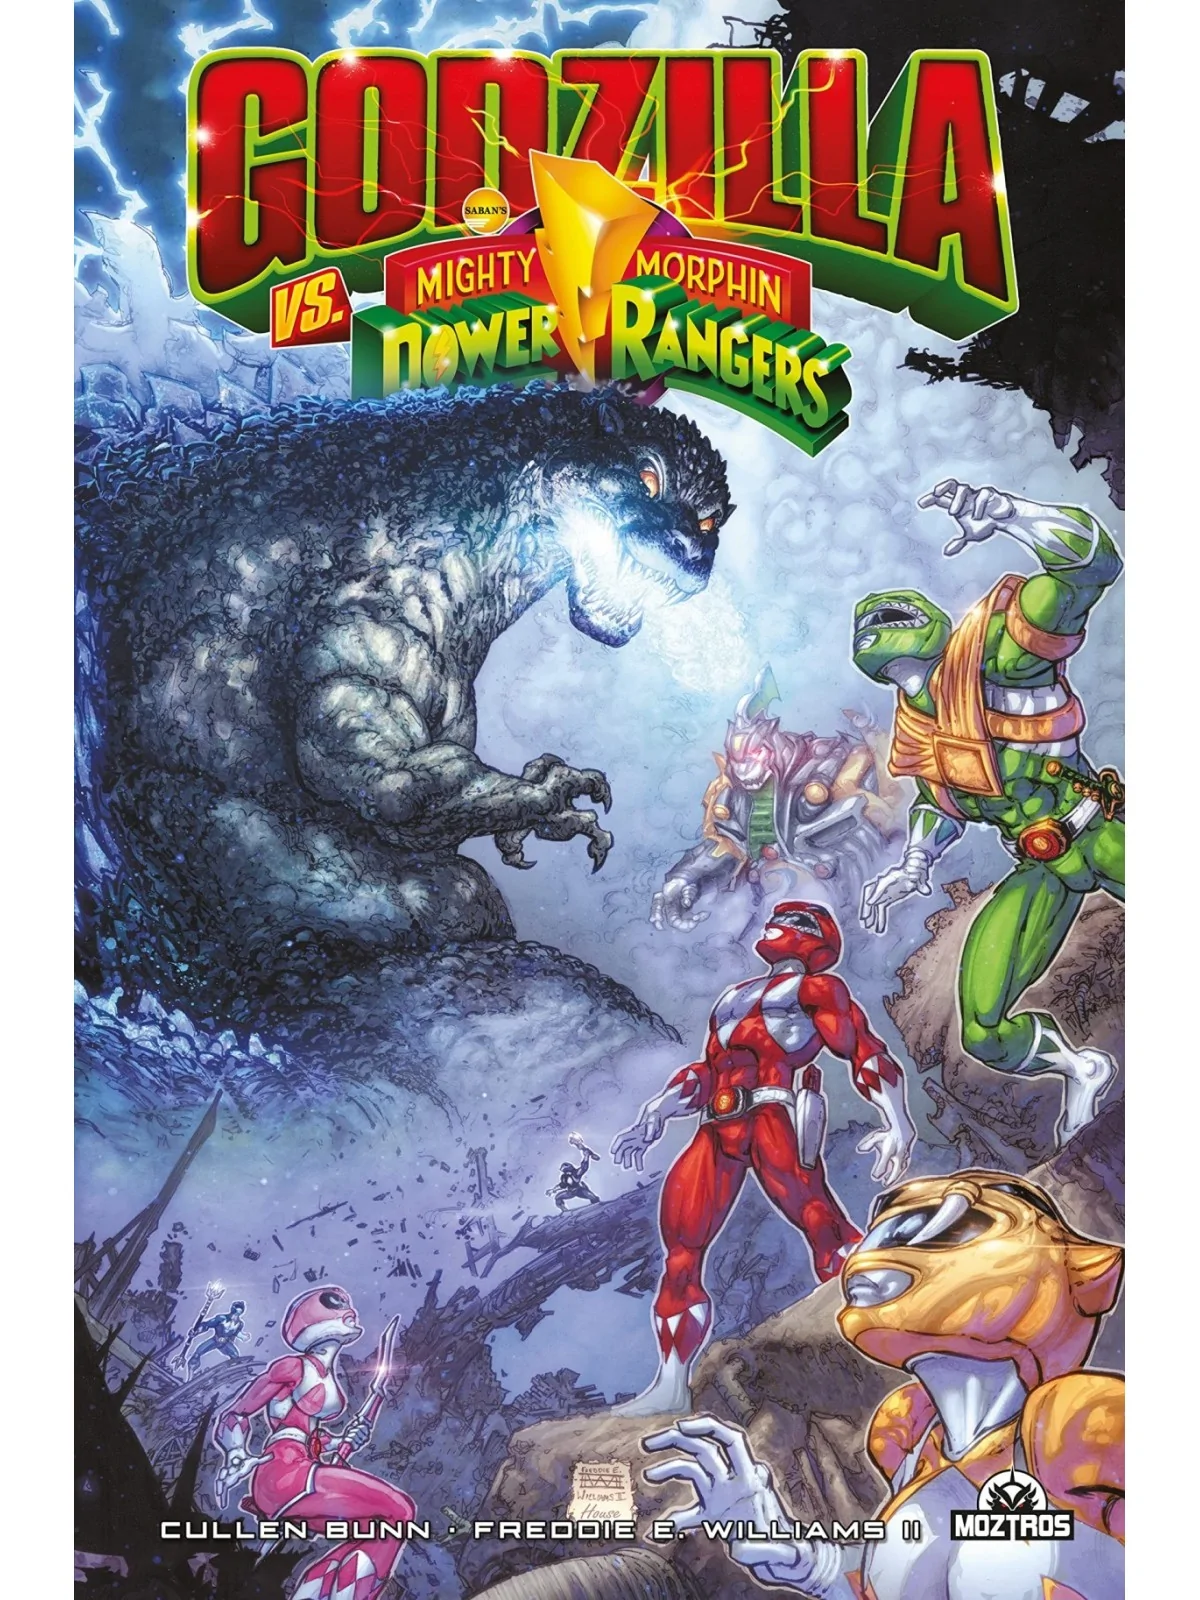 Comprar Godzilla Vs Mighty Morphin Power Rangers barato al mejor preci